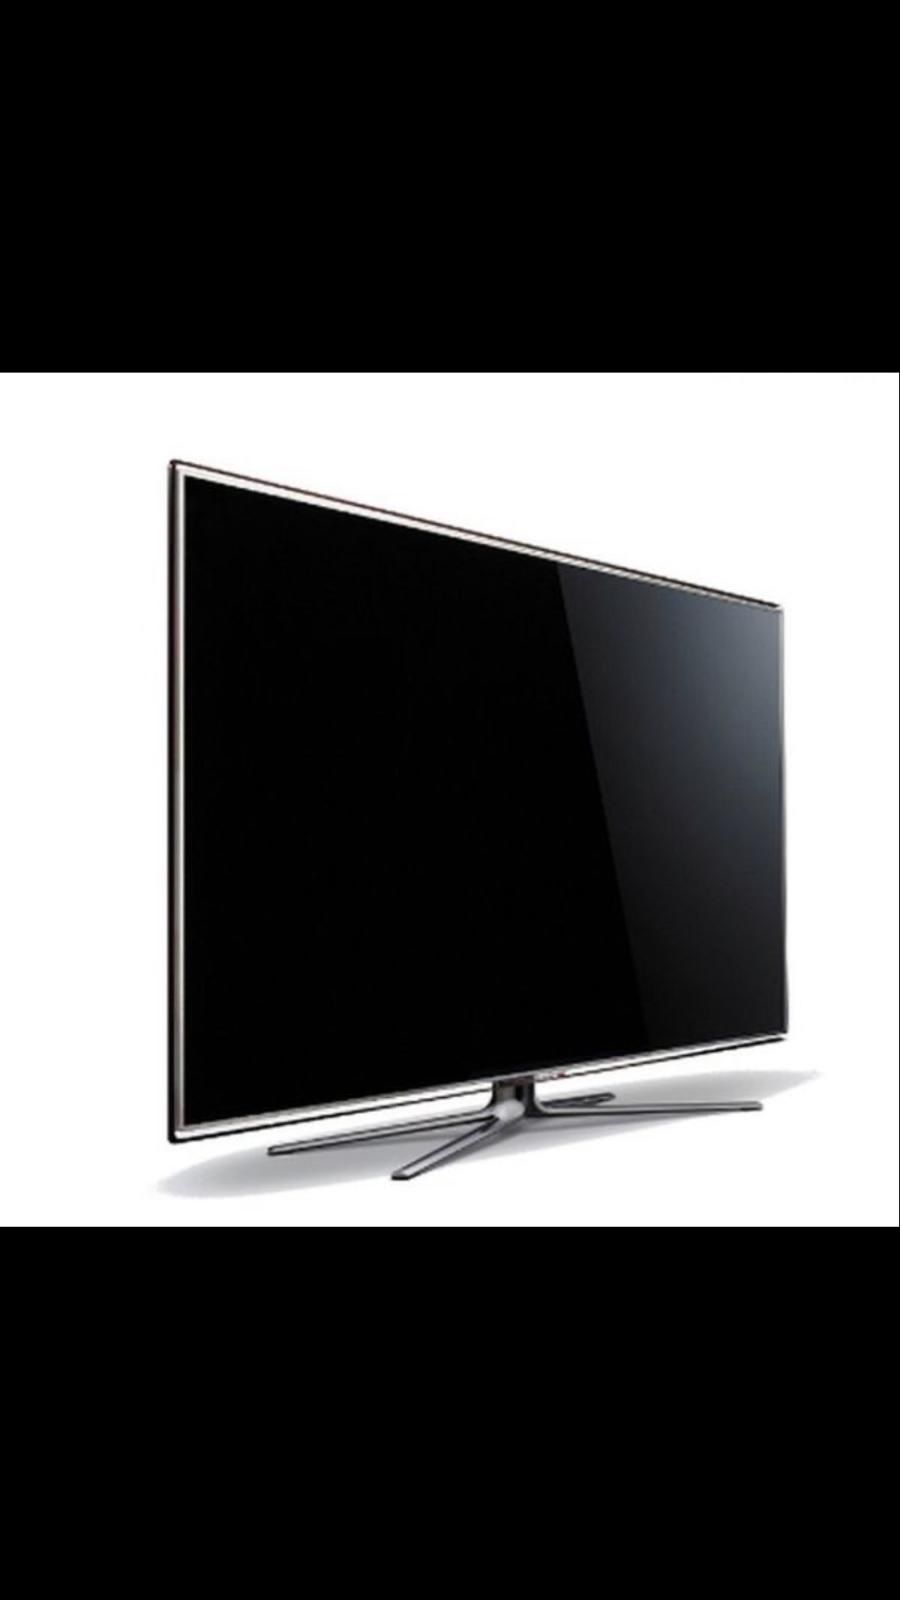 Samsung 3D Smart TV